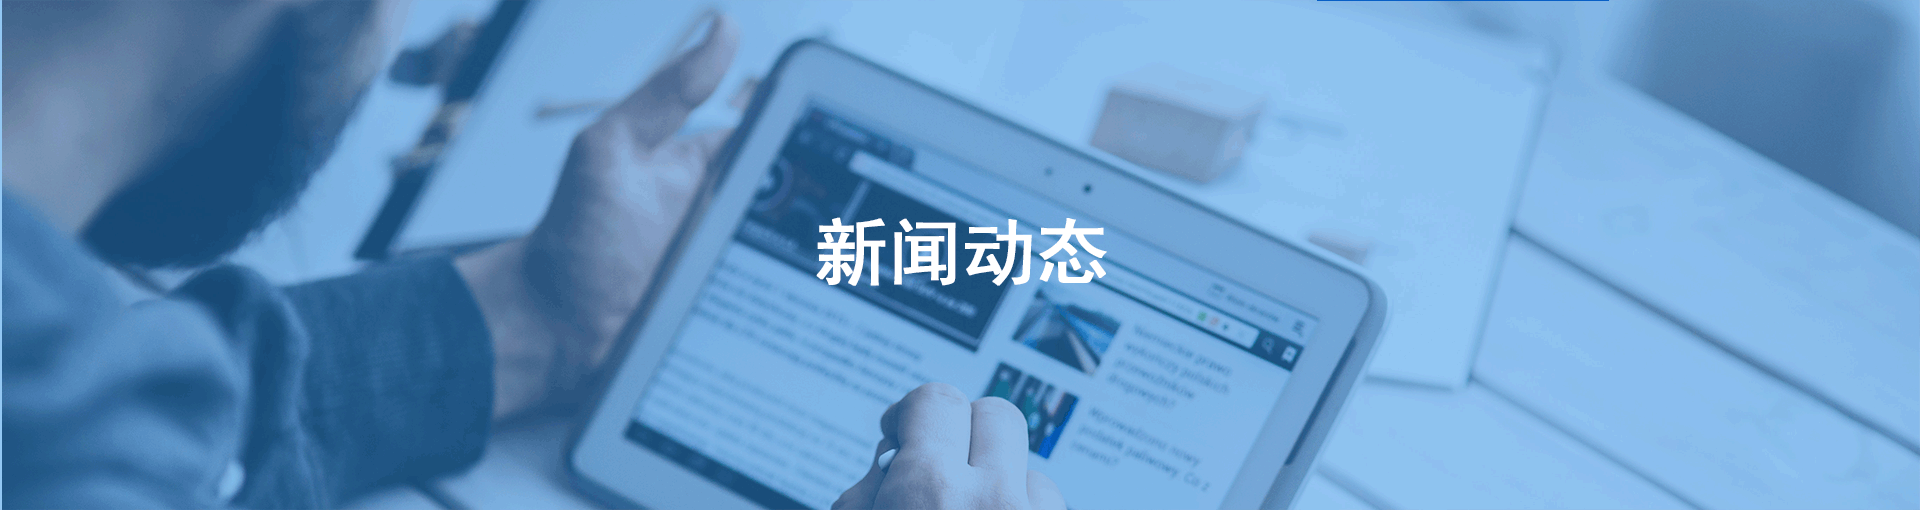 热烈祝贺广州市国万电子科技有限公司手持机通过国家质量检验检测